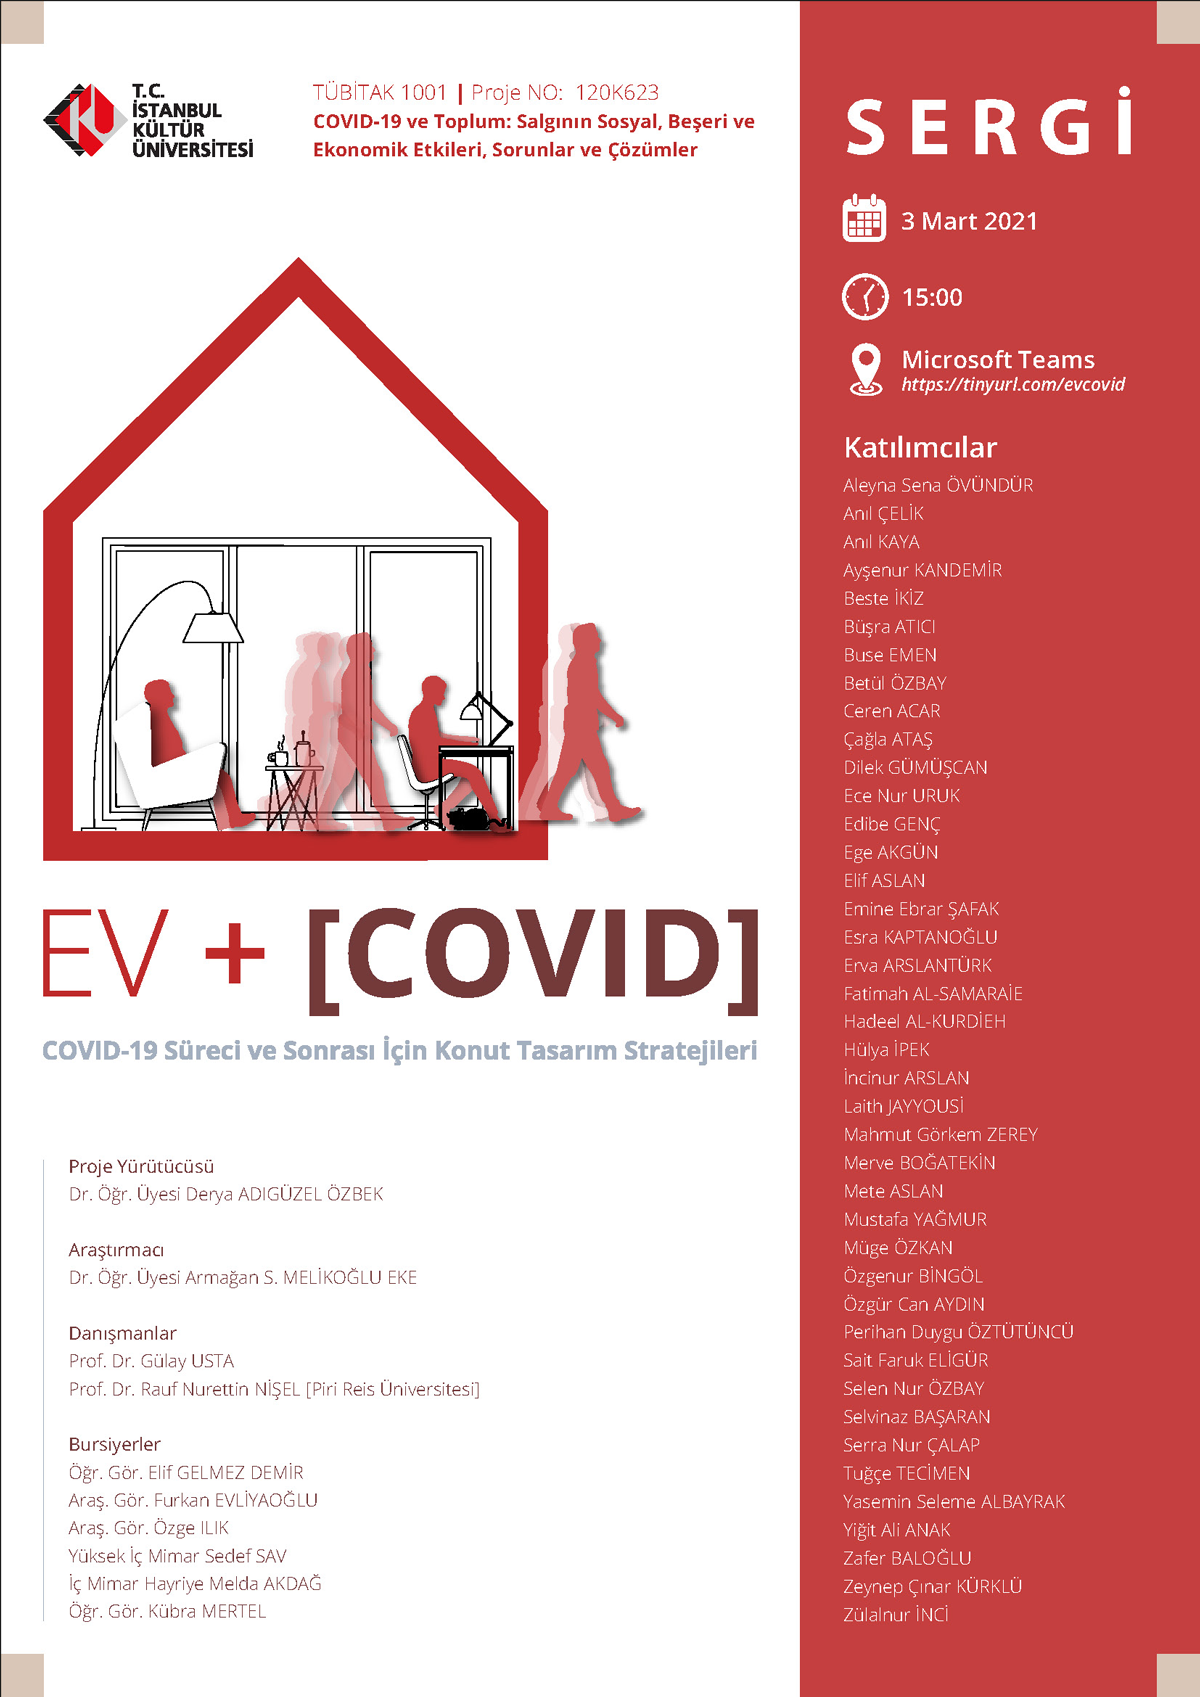 EV+[COVID] COVID-19 Süreci ve Sonrası için Konut Tasarım Stratejileri